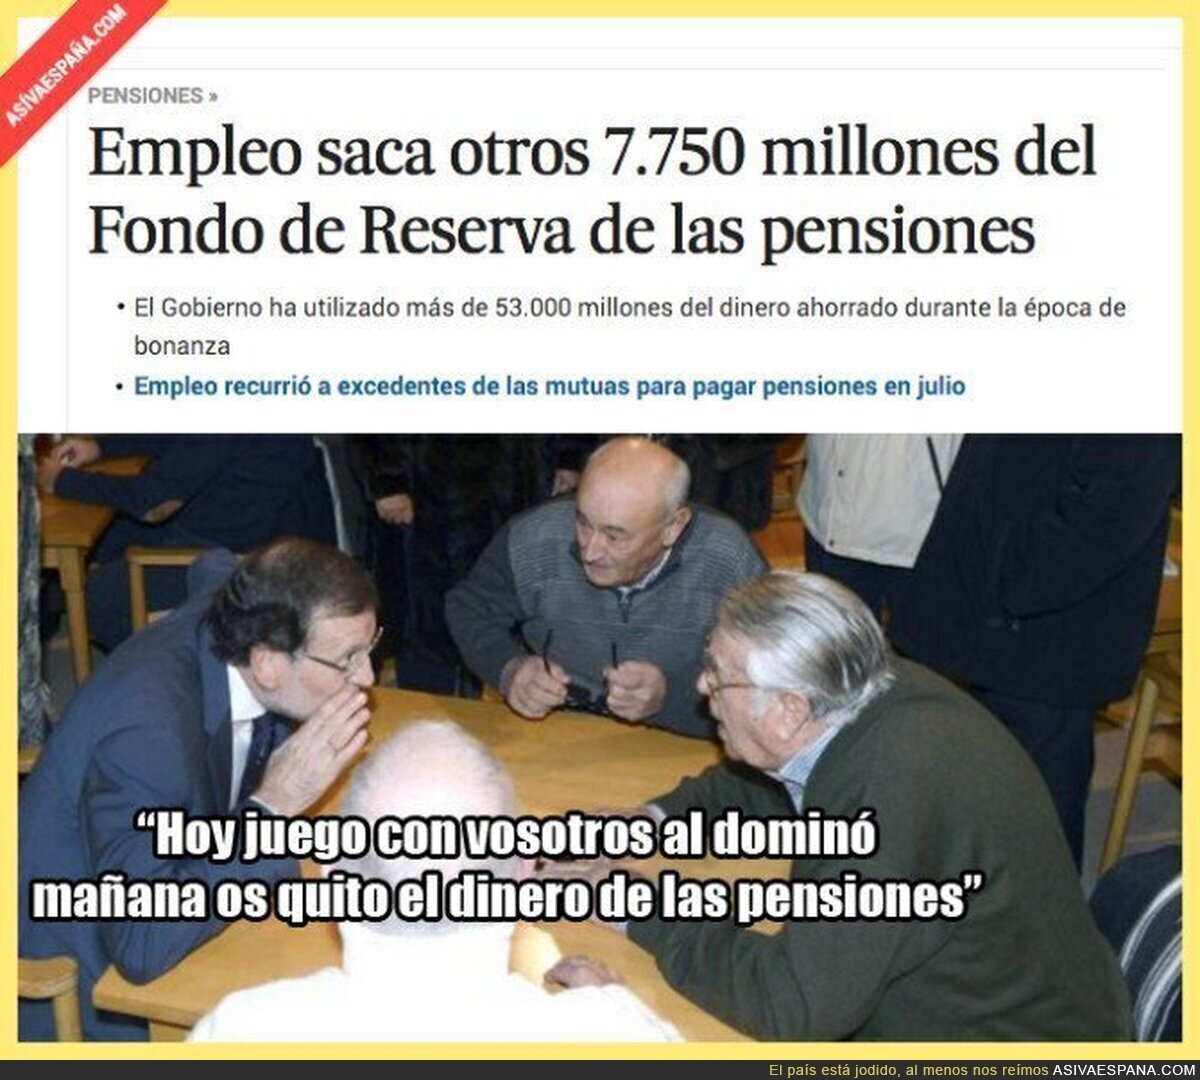 El Gobierno de Rajoy vuelve a sacar dinero de las pensiones